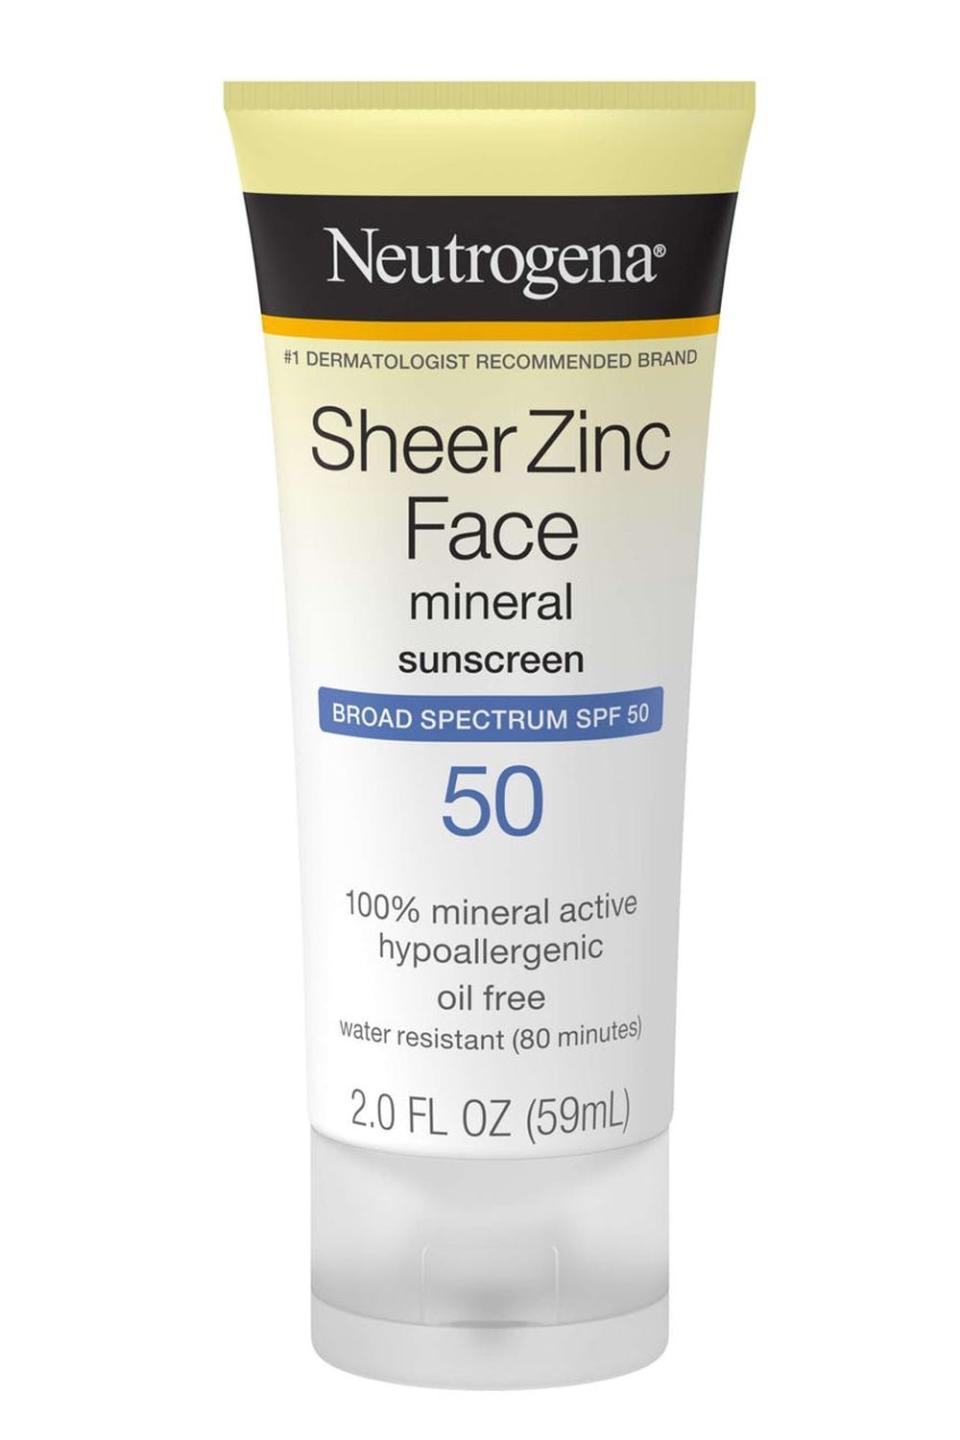 14) Neutrogena Sheer Zinc Face Mineral Sunscreen SPF 50